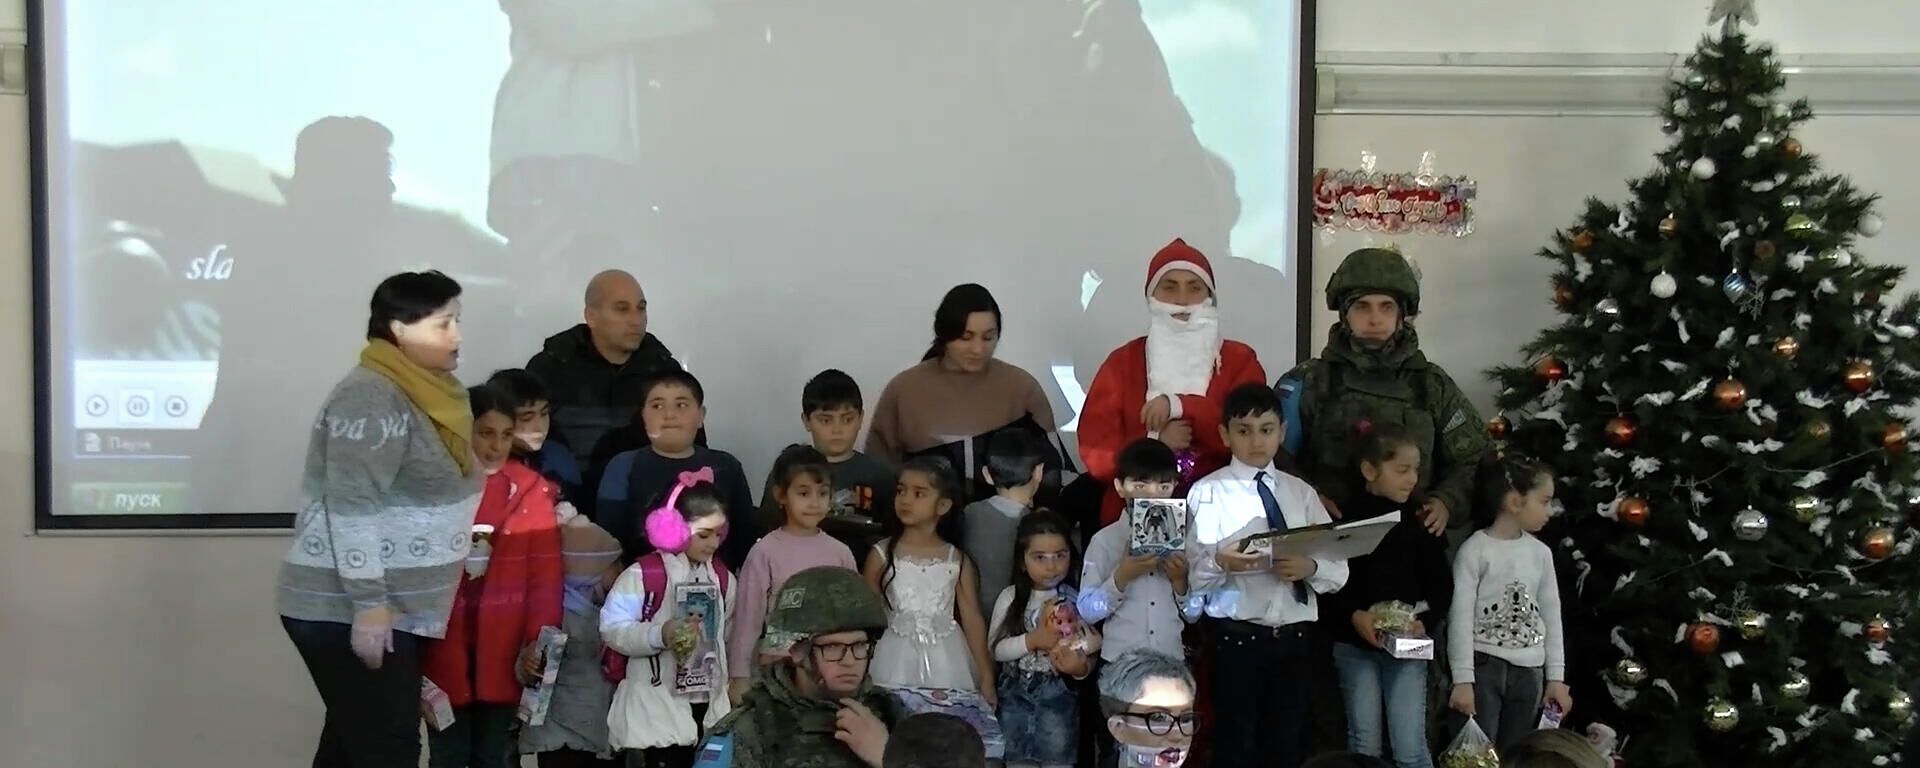 Российские миротворцы вместе с благотворителями передали новогодние подарки 800 детям Мардакертского района Нагорного Карабаха - Sputnik Армения, 1920, 25.12.2021